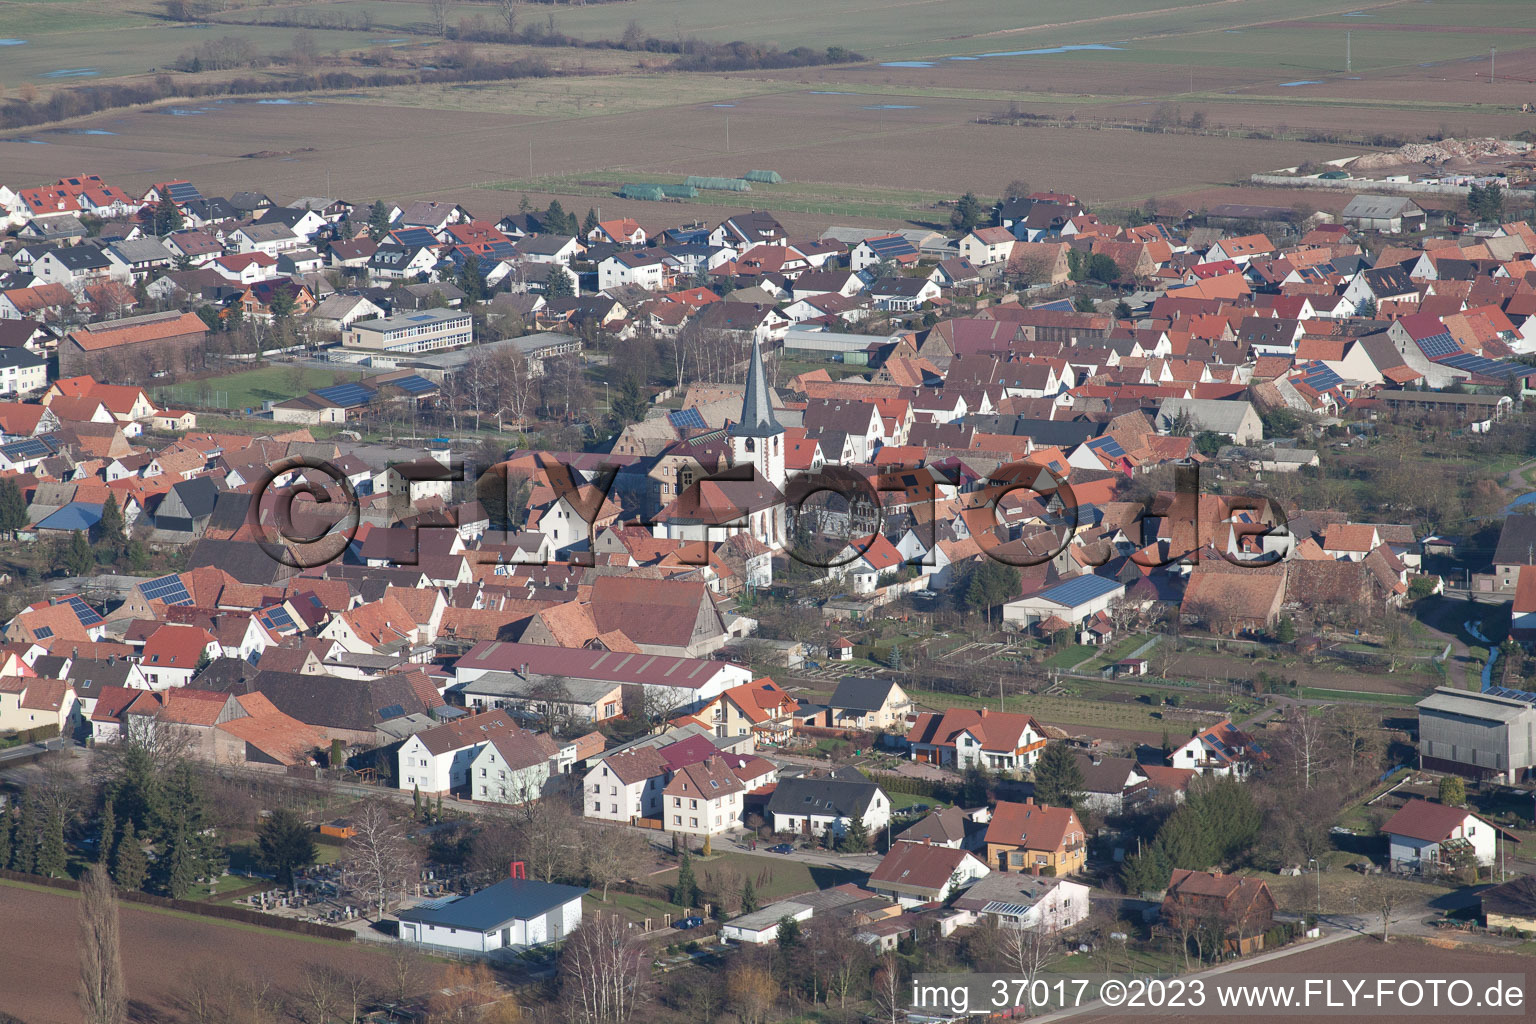 Ottersheim in Ottersheim bei Landau im Bundesland Rheinland-Pfalz, Deutschland aus der Luft betrachtet